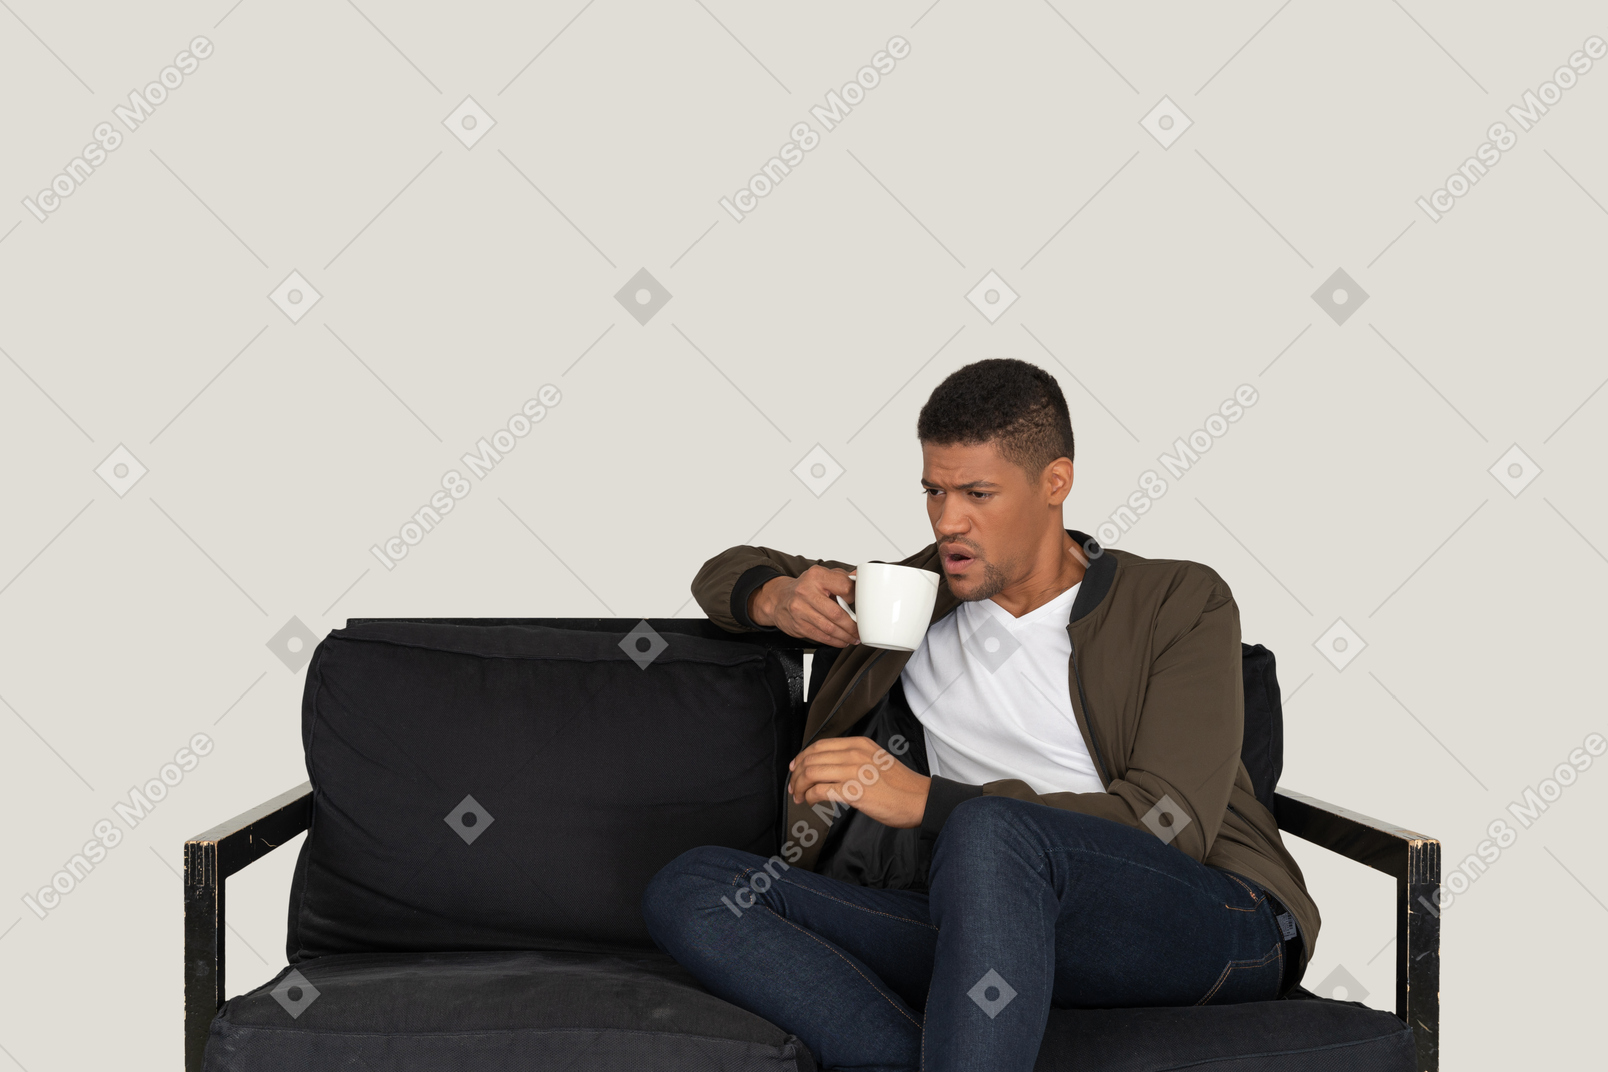 Вид спереди недовольного молодого человека, сидящего на диване с чашкой кофе